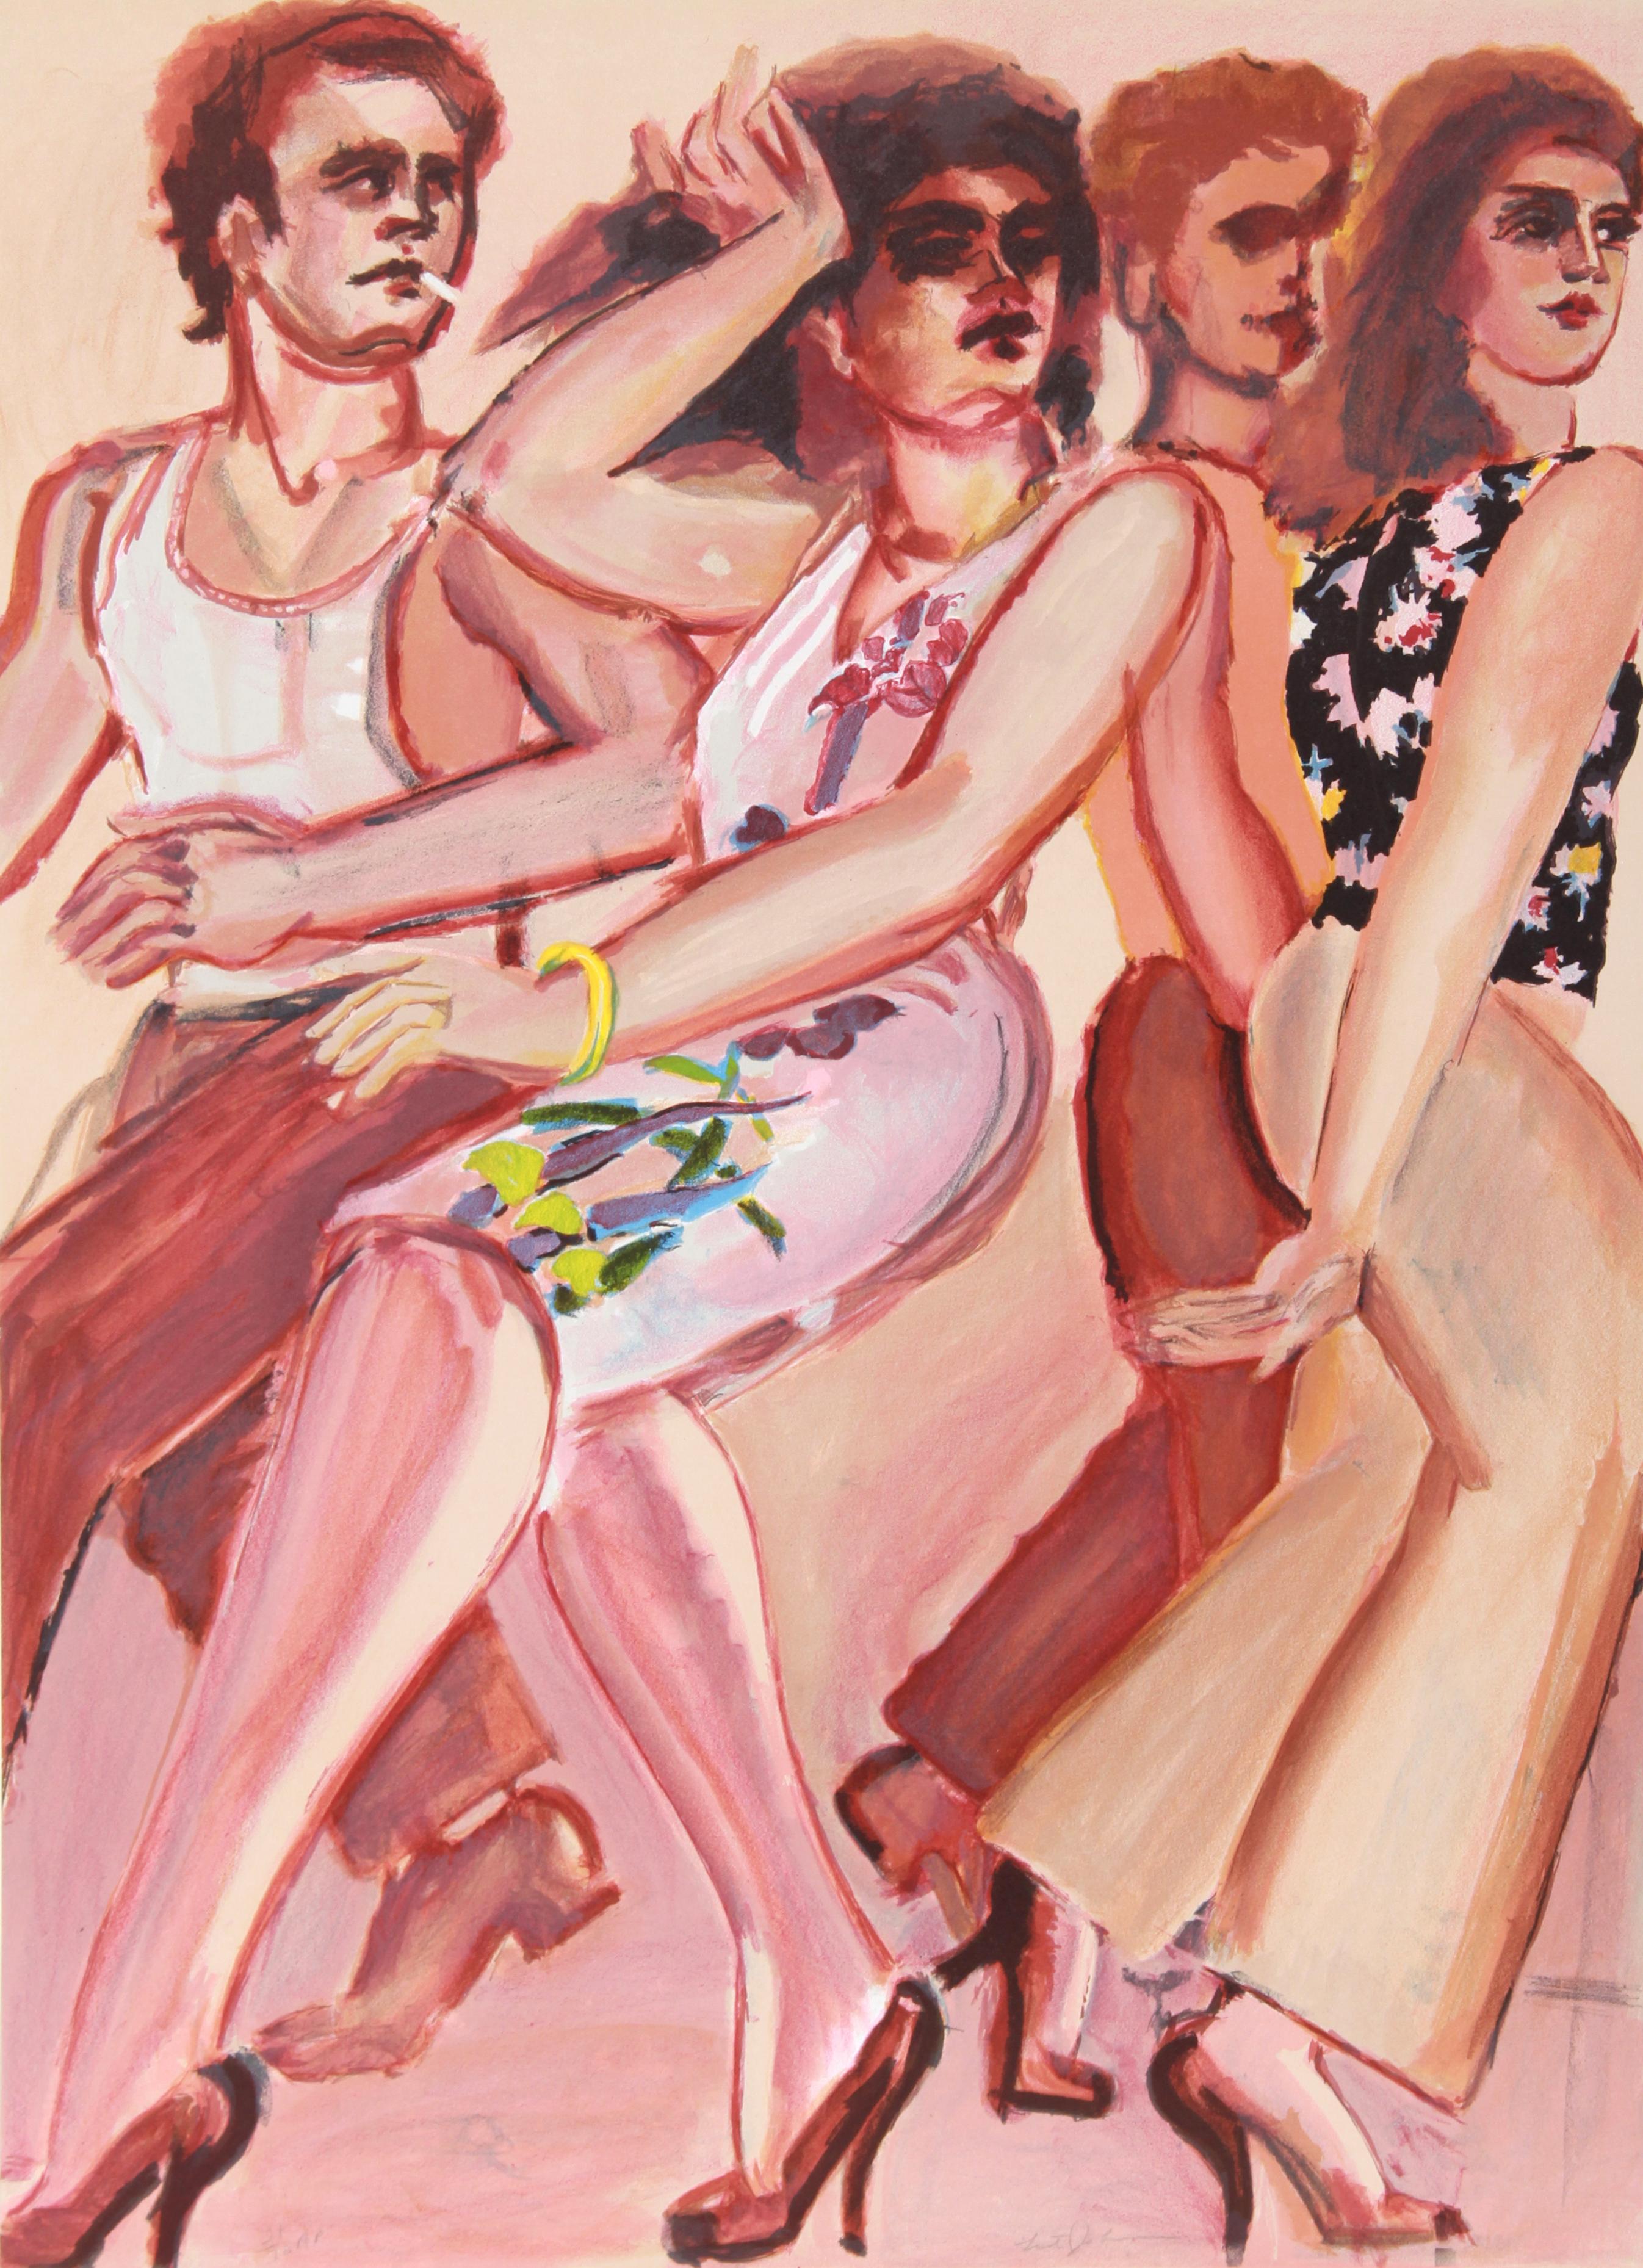 Artiste : Lester Johnson, américain (1919 - 2010)
Titre : New York Dancers (8)
Année : Circa 1980
Médium : Lithographie, signée et numérotée au crayon
Edition : 175
Taille du papier : 28.5 x 21 pouces